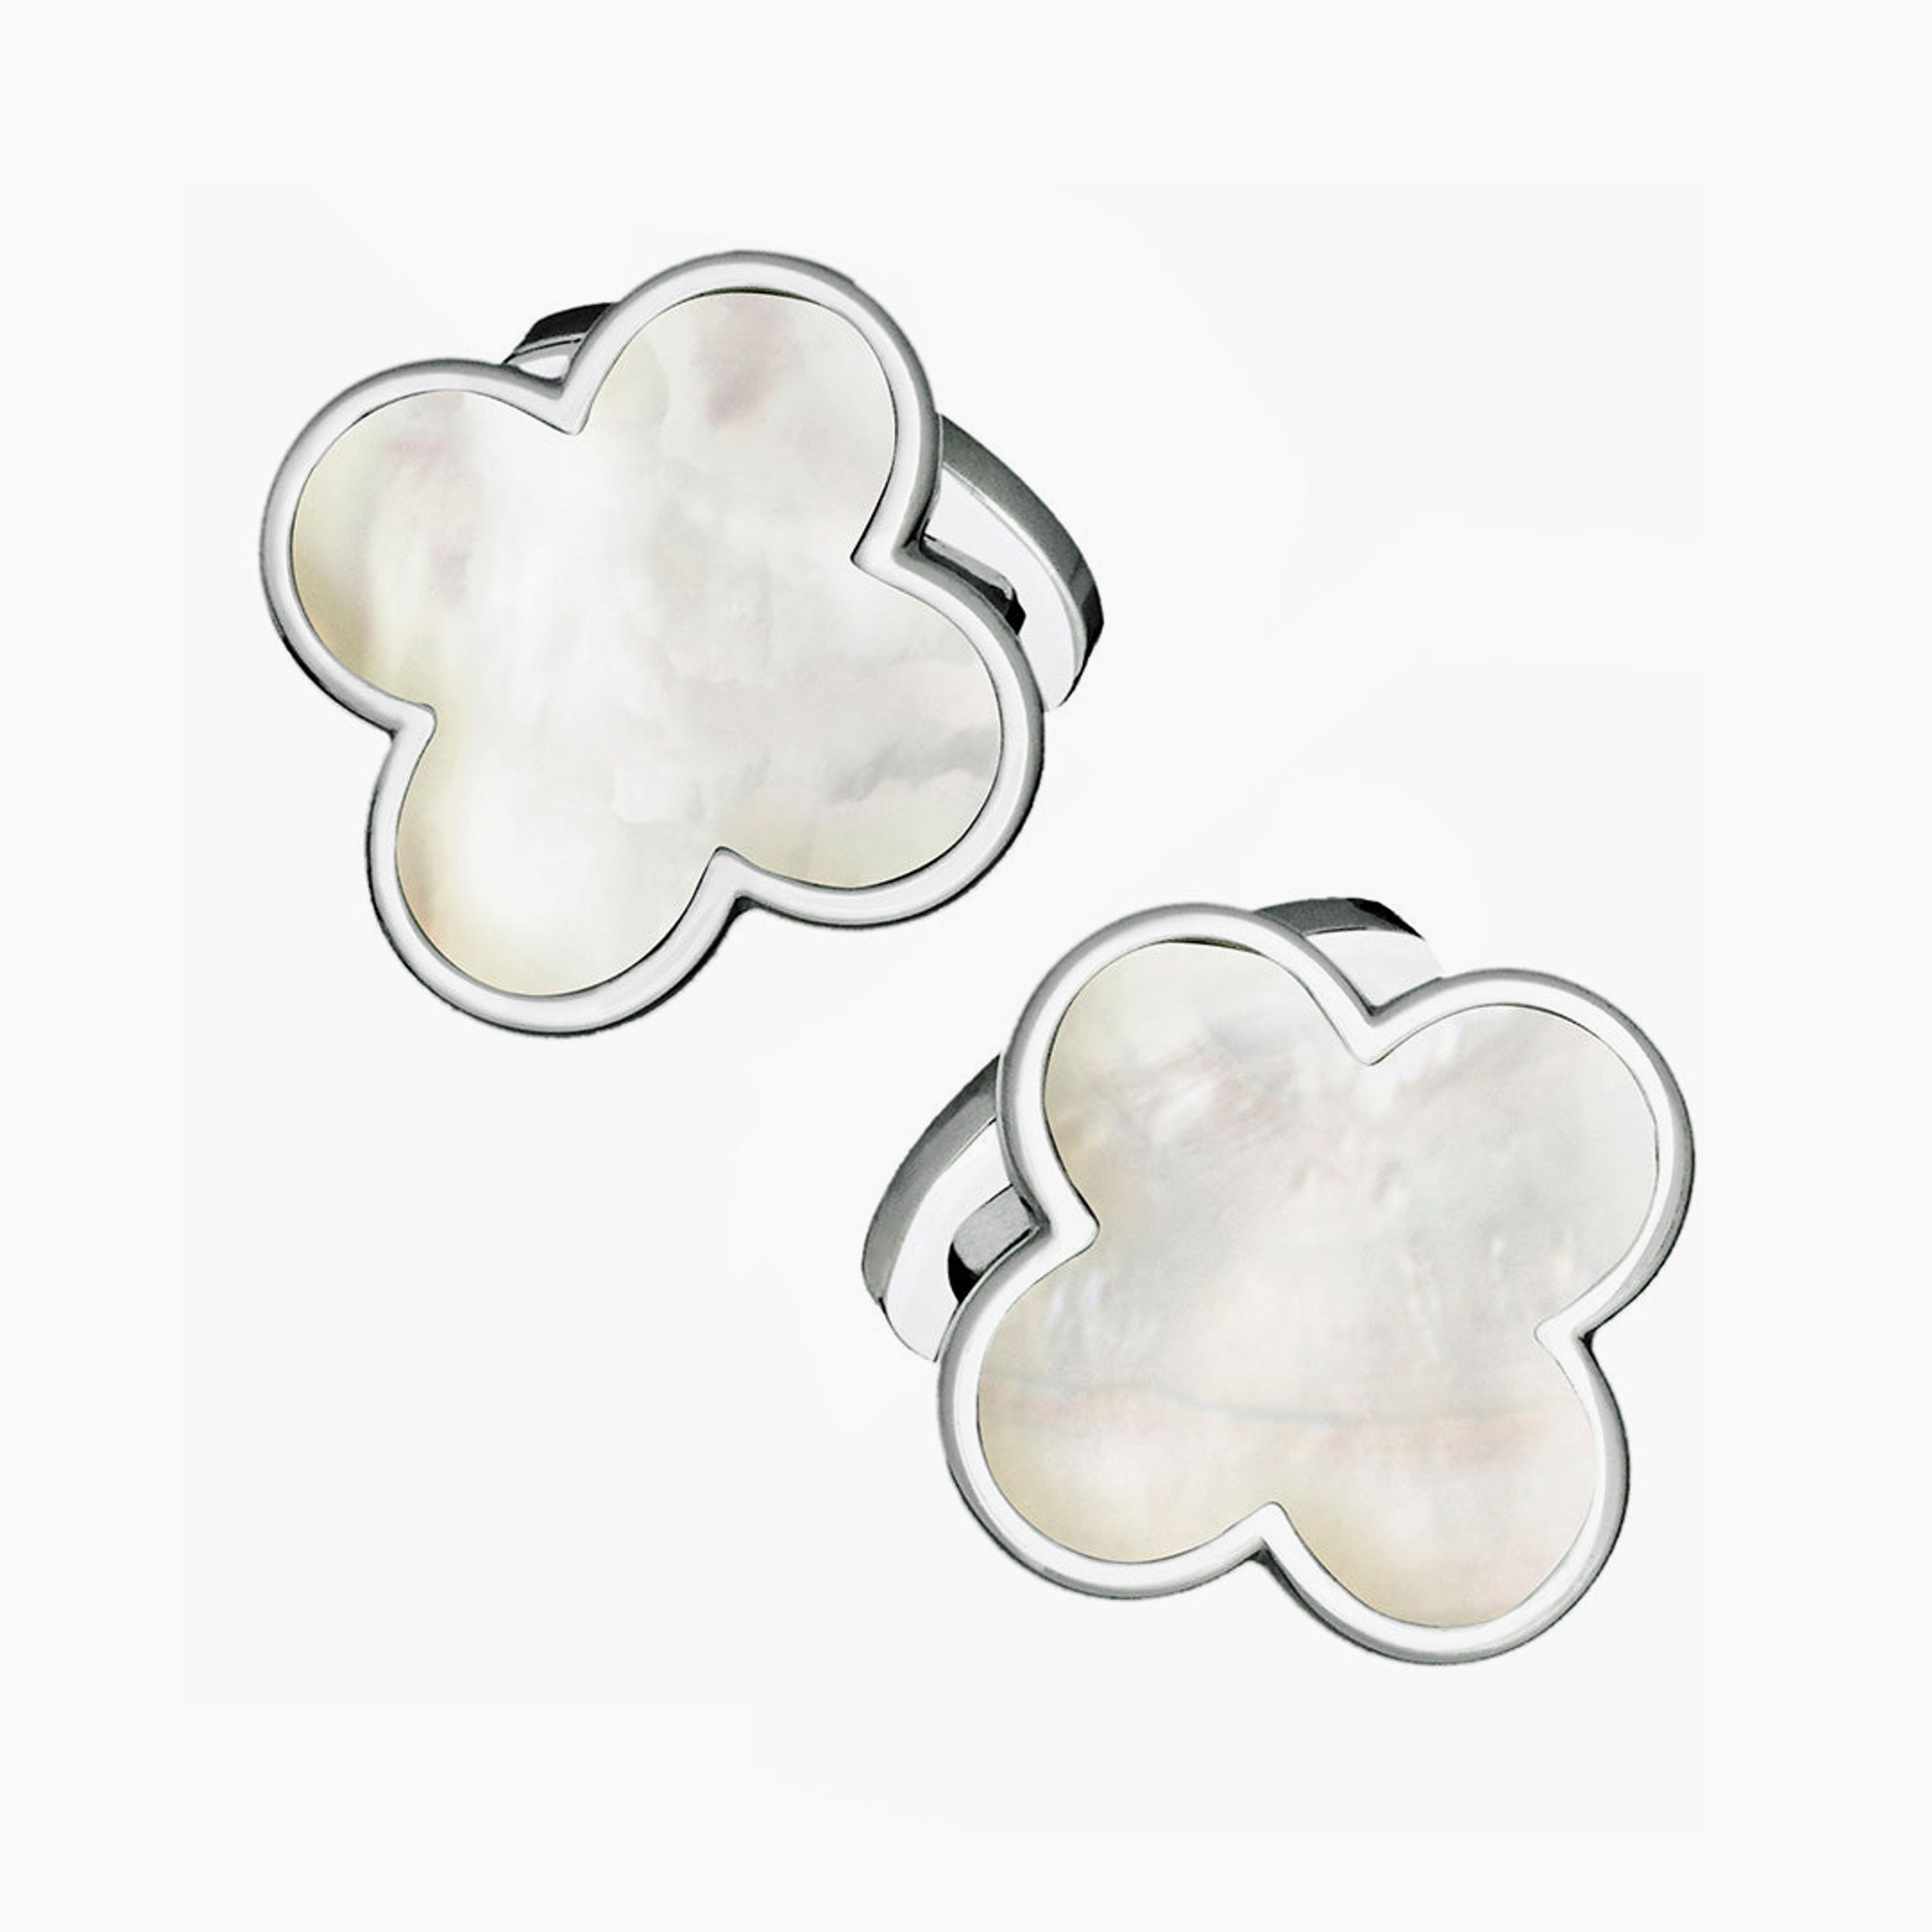 Four Leaf Clover Gemstone and Sterling Silver Cufflinks | Jan Leslie